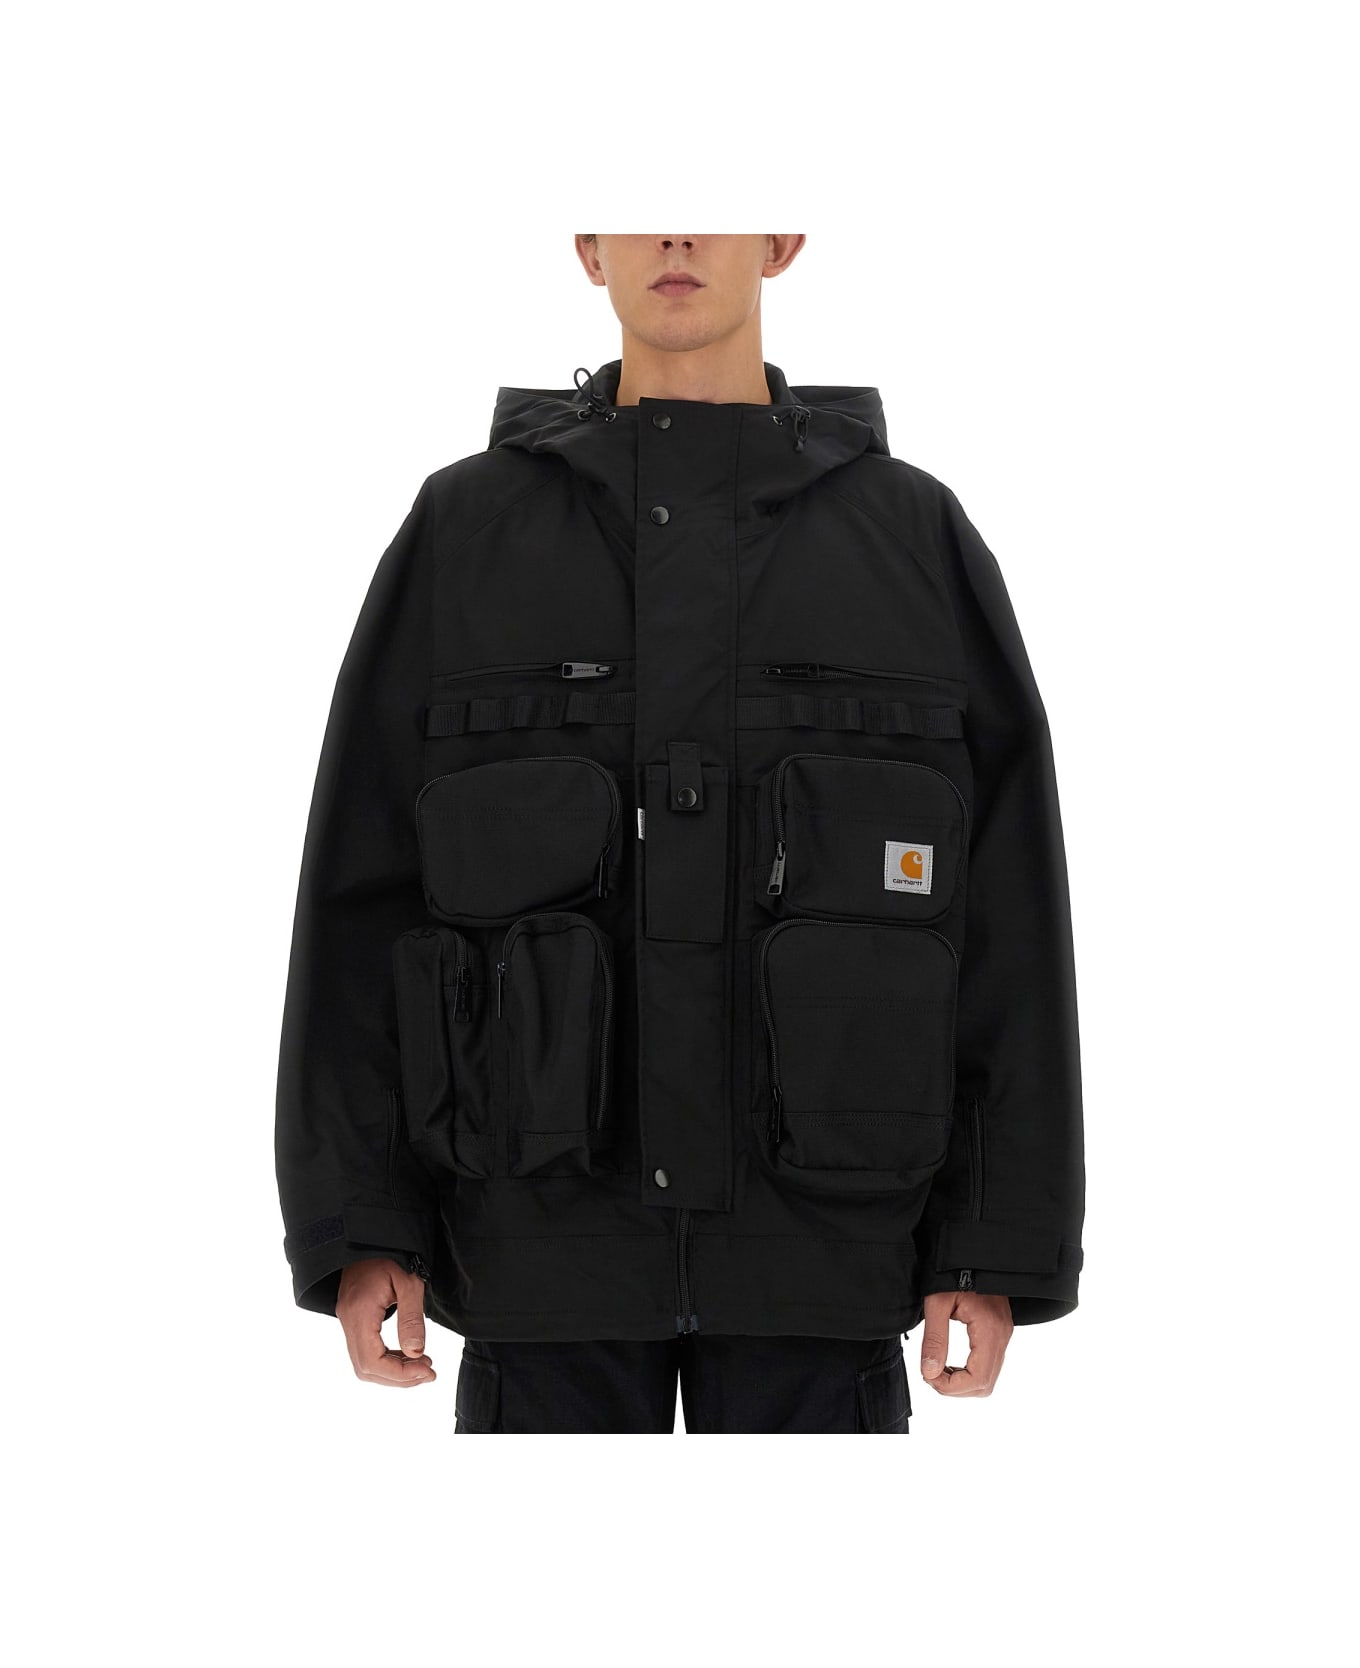 Junya Watanabe X Carhartt Jacket - BLACK ジャケット